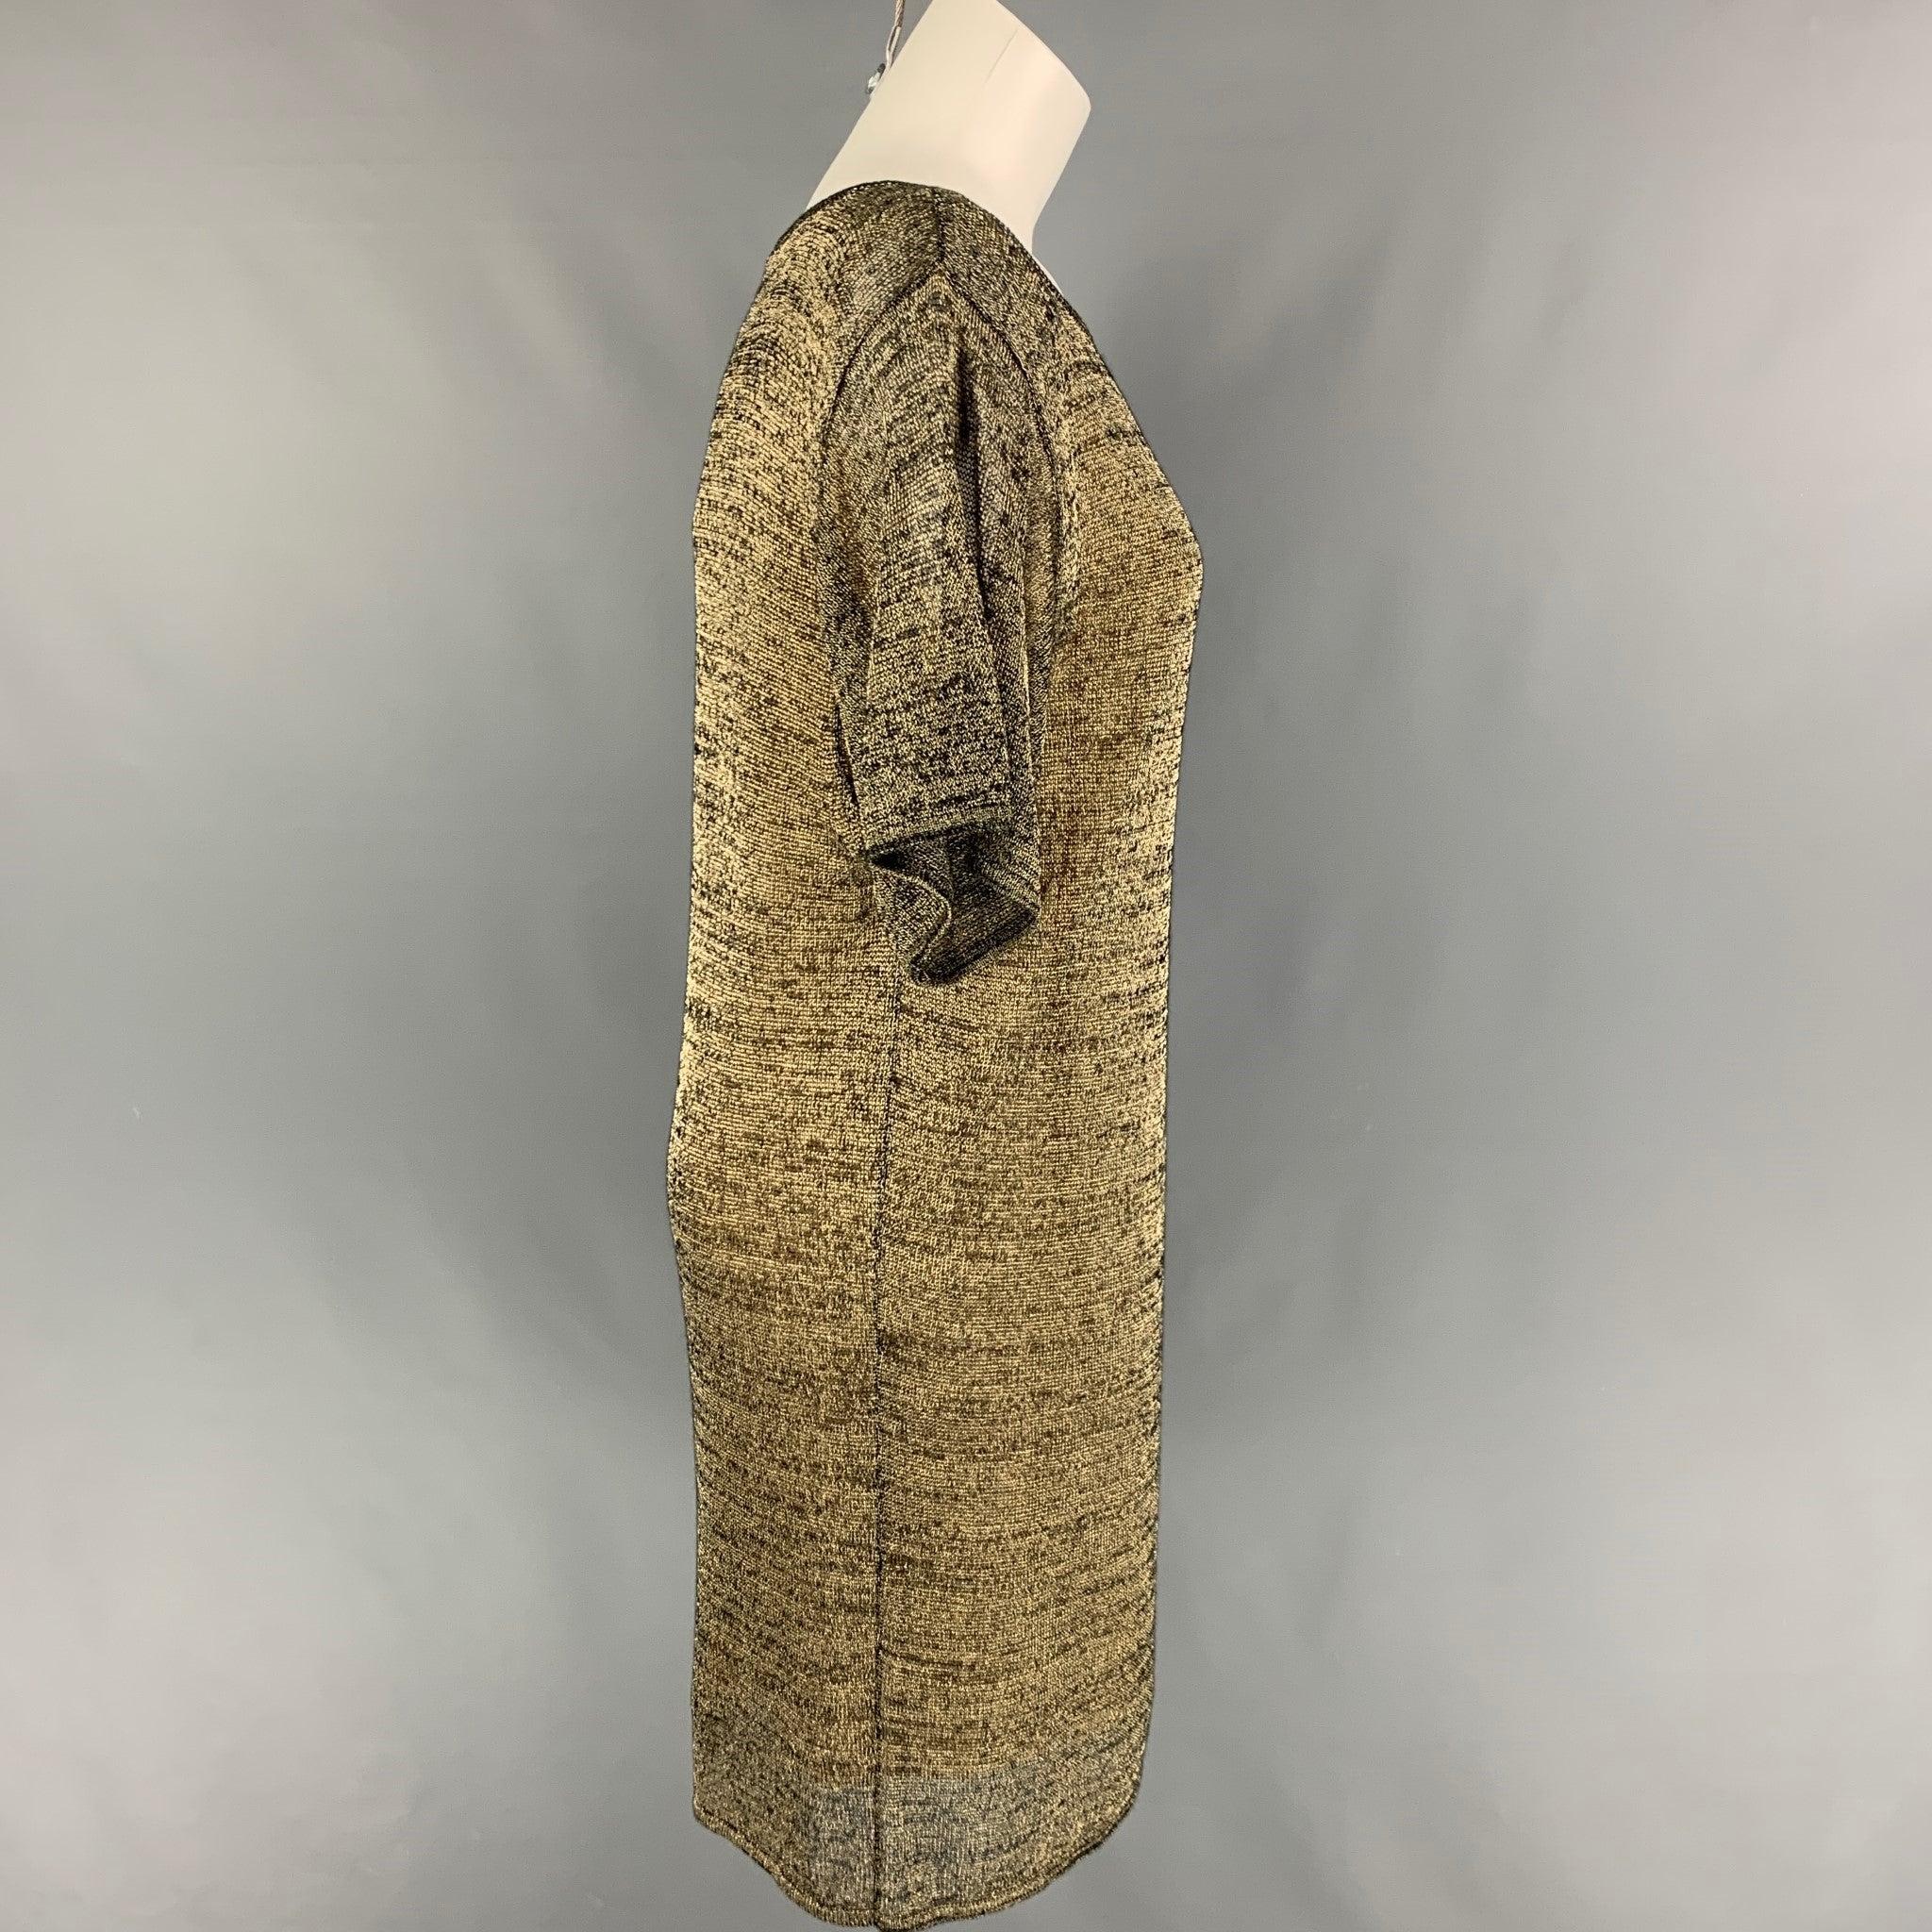 Das Kleid von PORTS 1961 besteht aus gold-schwarzem Baumwoll-Polyester-Strick, hat kurze Ärmel und einen weiten Halsausschnitt.
Neu mit Tags.
 

Markiert:   L 

Abmessungen: 
 
Schultern: 18 Zoll  Oberweite: 36 Zoll  Ärmel: 11 Zoll  Hüfte: 36 Zoll 